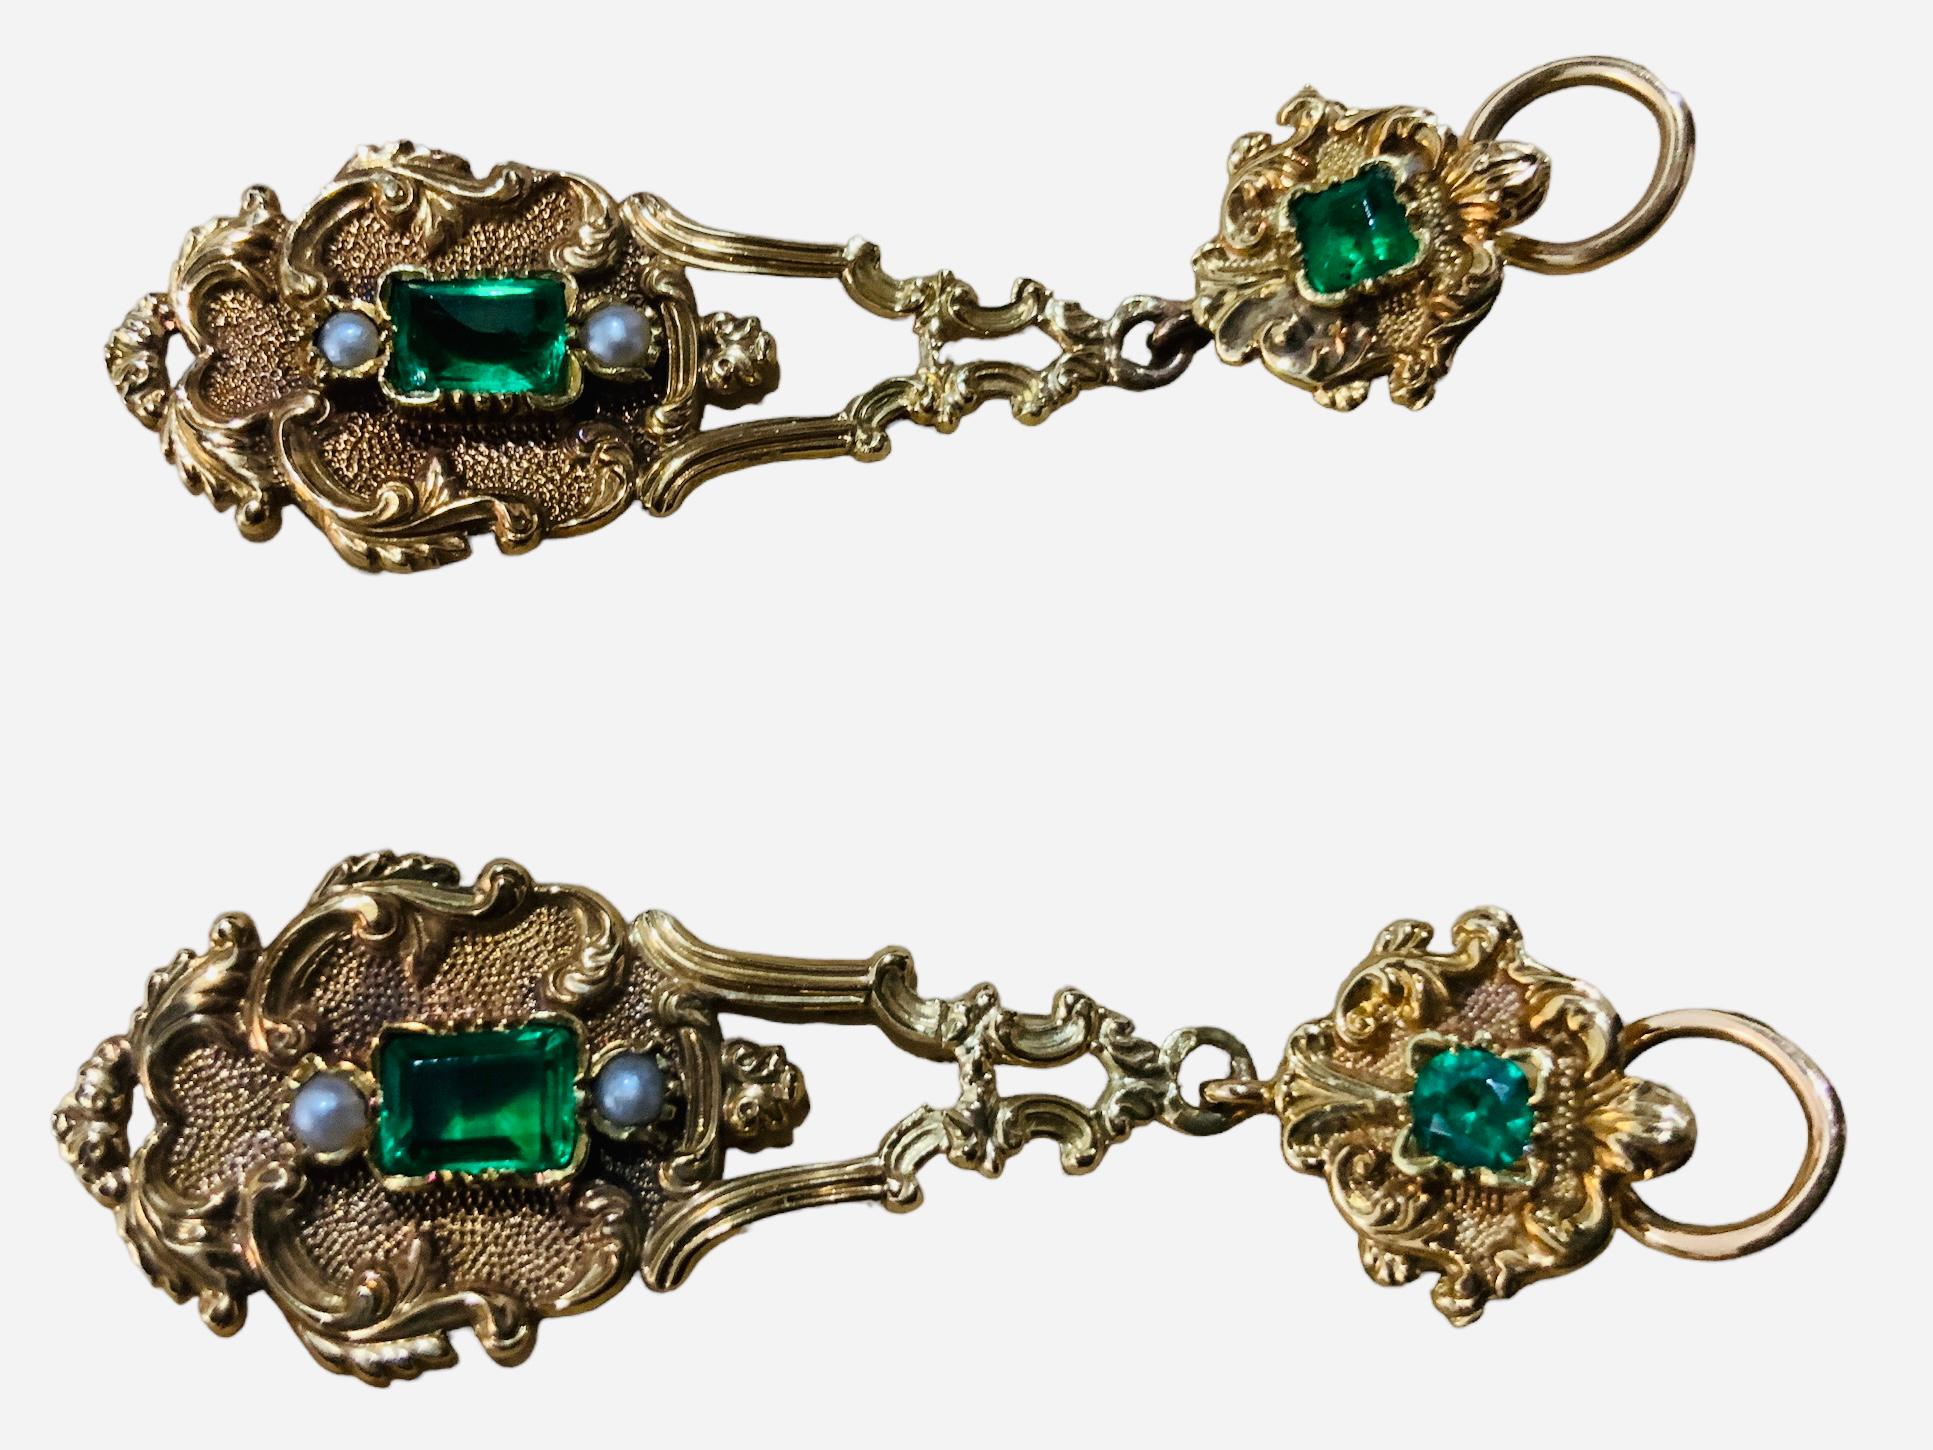 Dies ist eine viktorianische 18K Gold und grünem Glas Paar Tropfen Ohrringe. Es zeigt zwei grüne Gläser im Smaragdschliff, das untere größer als das obere, umgeben von blumigen Details aus 18 K Gelbgold und Akanthusblättern. Zwei Saatperlen